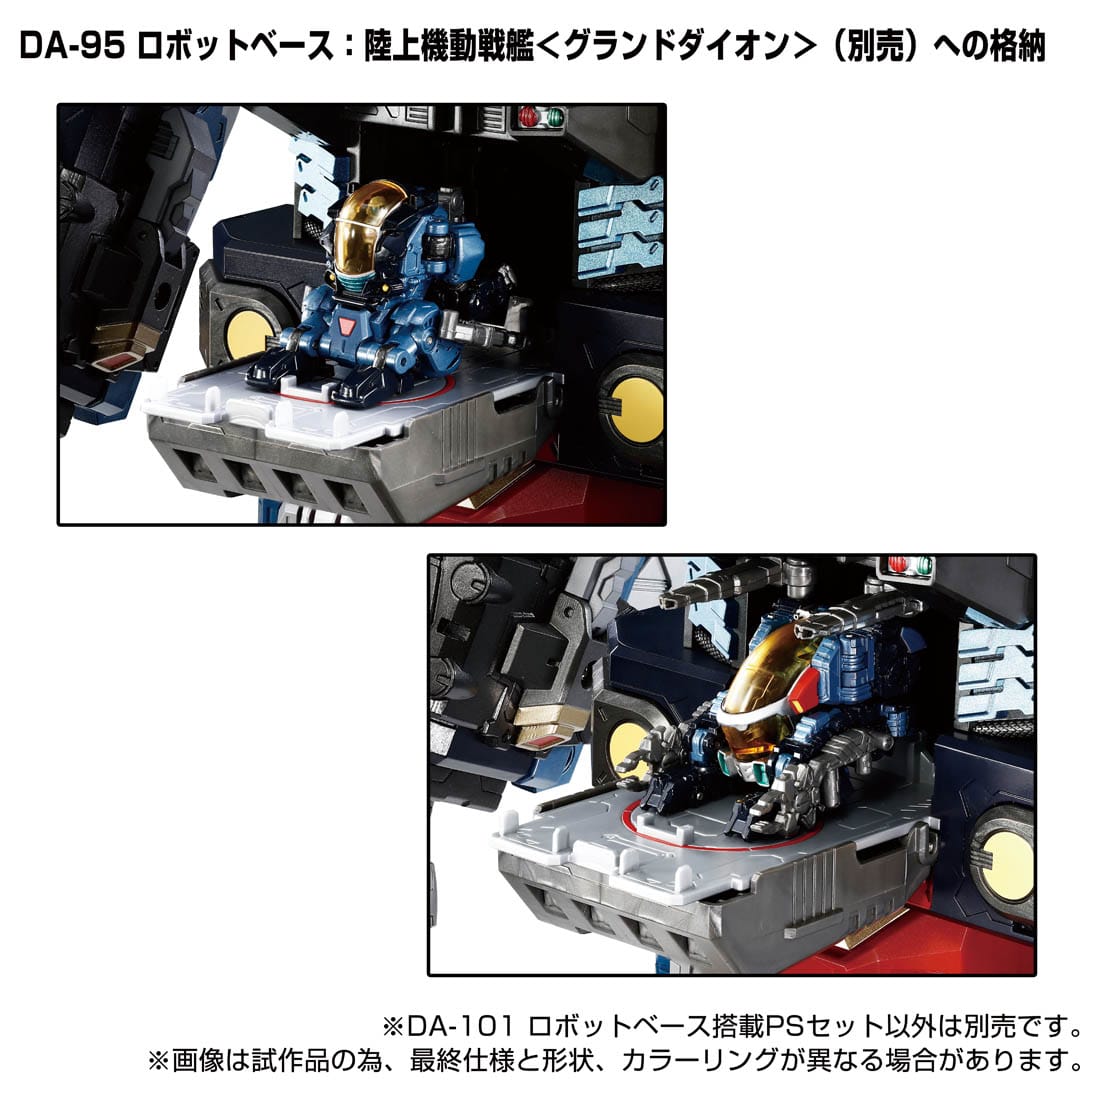 ダイアクロン『DA-101 ロボットベース搭載PSセット』可変可動フィギュア-002